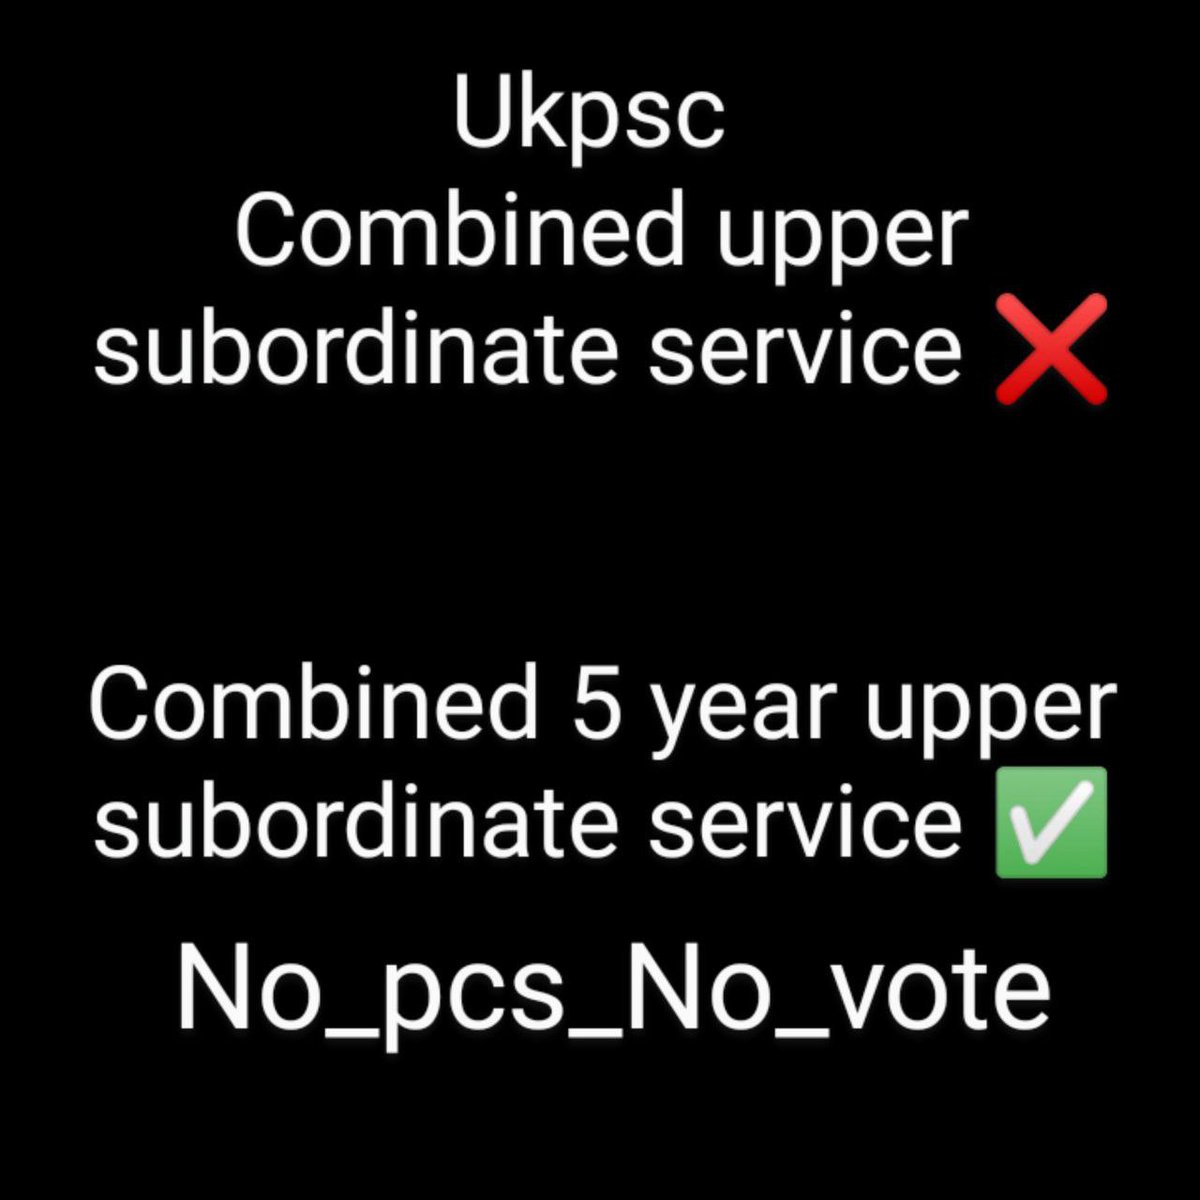 @pushkardhami एक कुकृत्य ukpsc भी कर रहा है हमारे साथ - कृपया इन्हें दुरुस्त कीजिए और PCS का विज्ञापन आचार संहिता लागू होने के पहले जारी किया जाए और उत्तर प्रदेश की तरह pre के रिजल्ट से पहले अन्य अधियाचन को जोड़ा जा सकता है 🙏 @UKPSCOFFICIAL #no_PCS_no_VOTE #ukpsc_pcs_new_notification